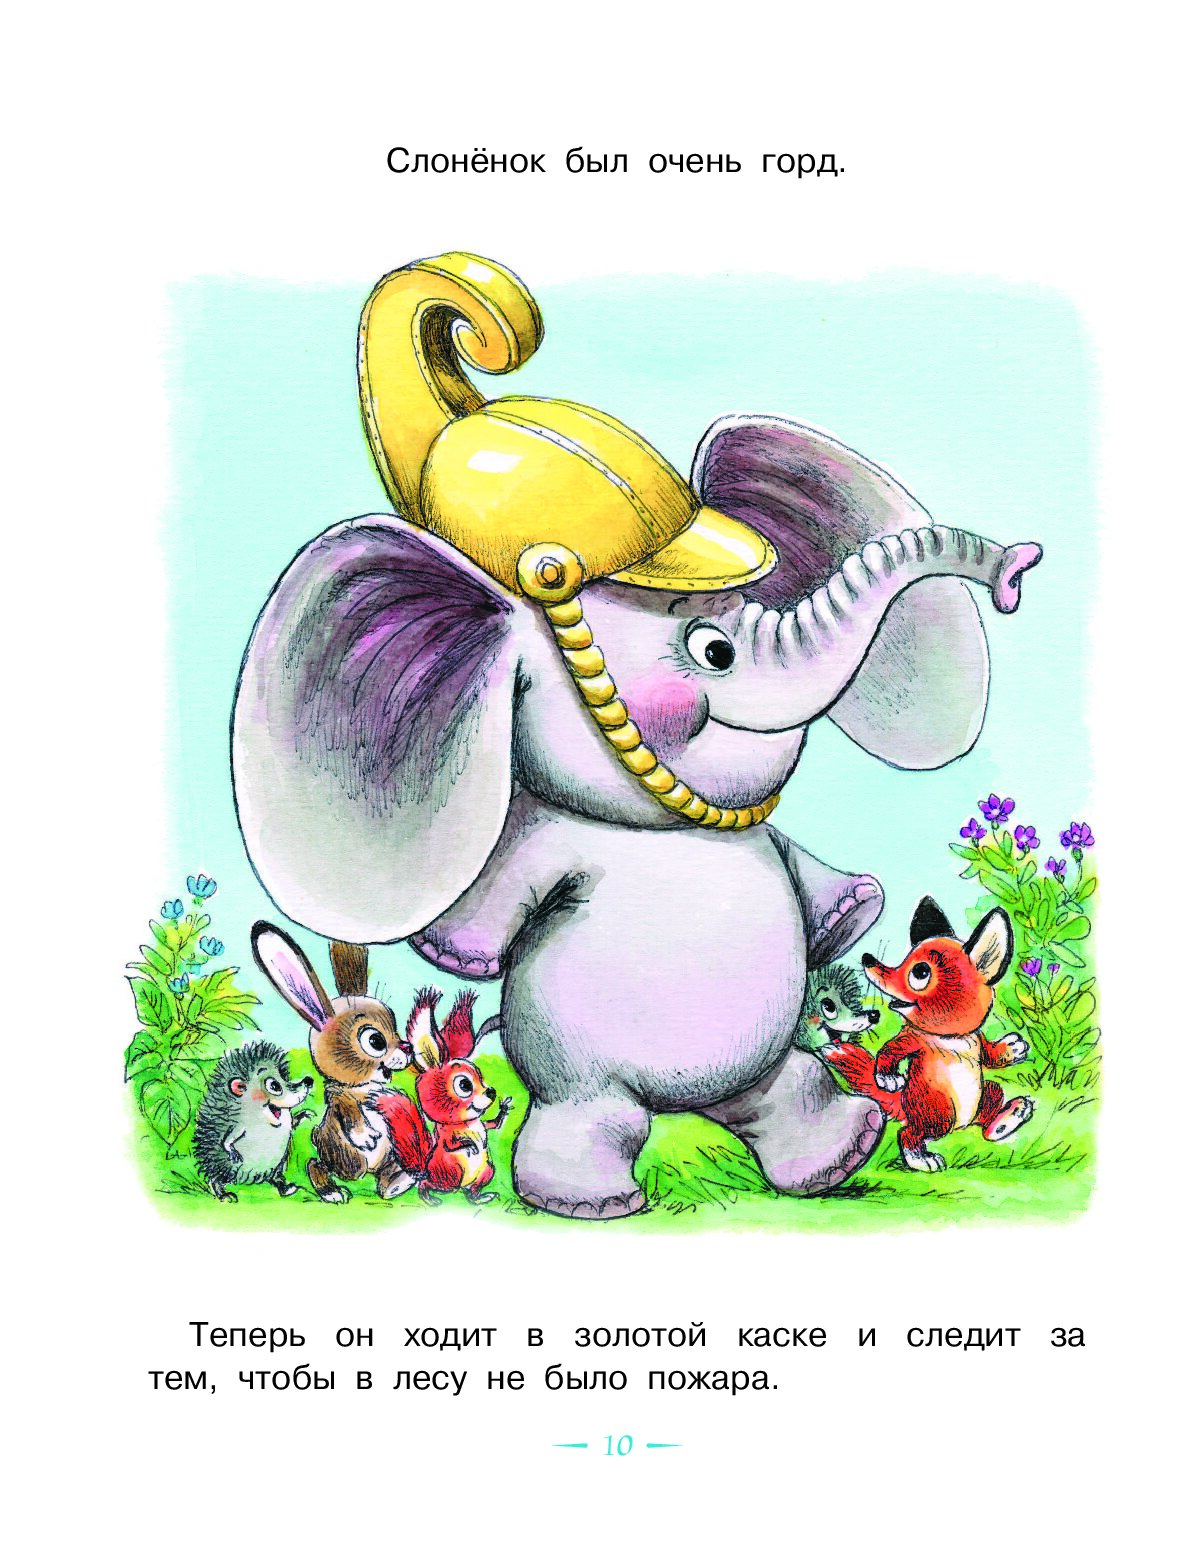 Слоник сказка. Жил на свете слонёнок — Цыферов г.м. Цыферова жил на свете Слоненок.